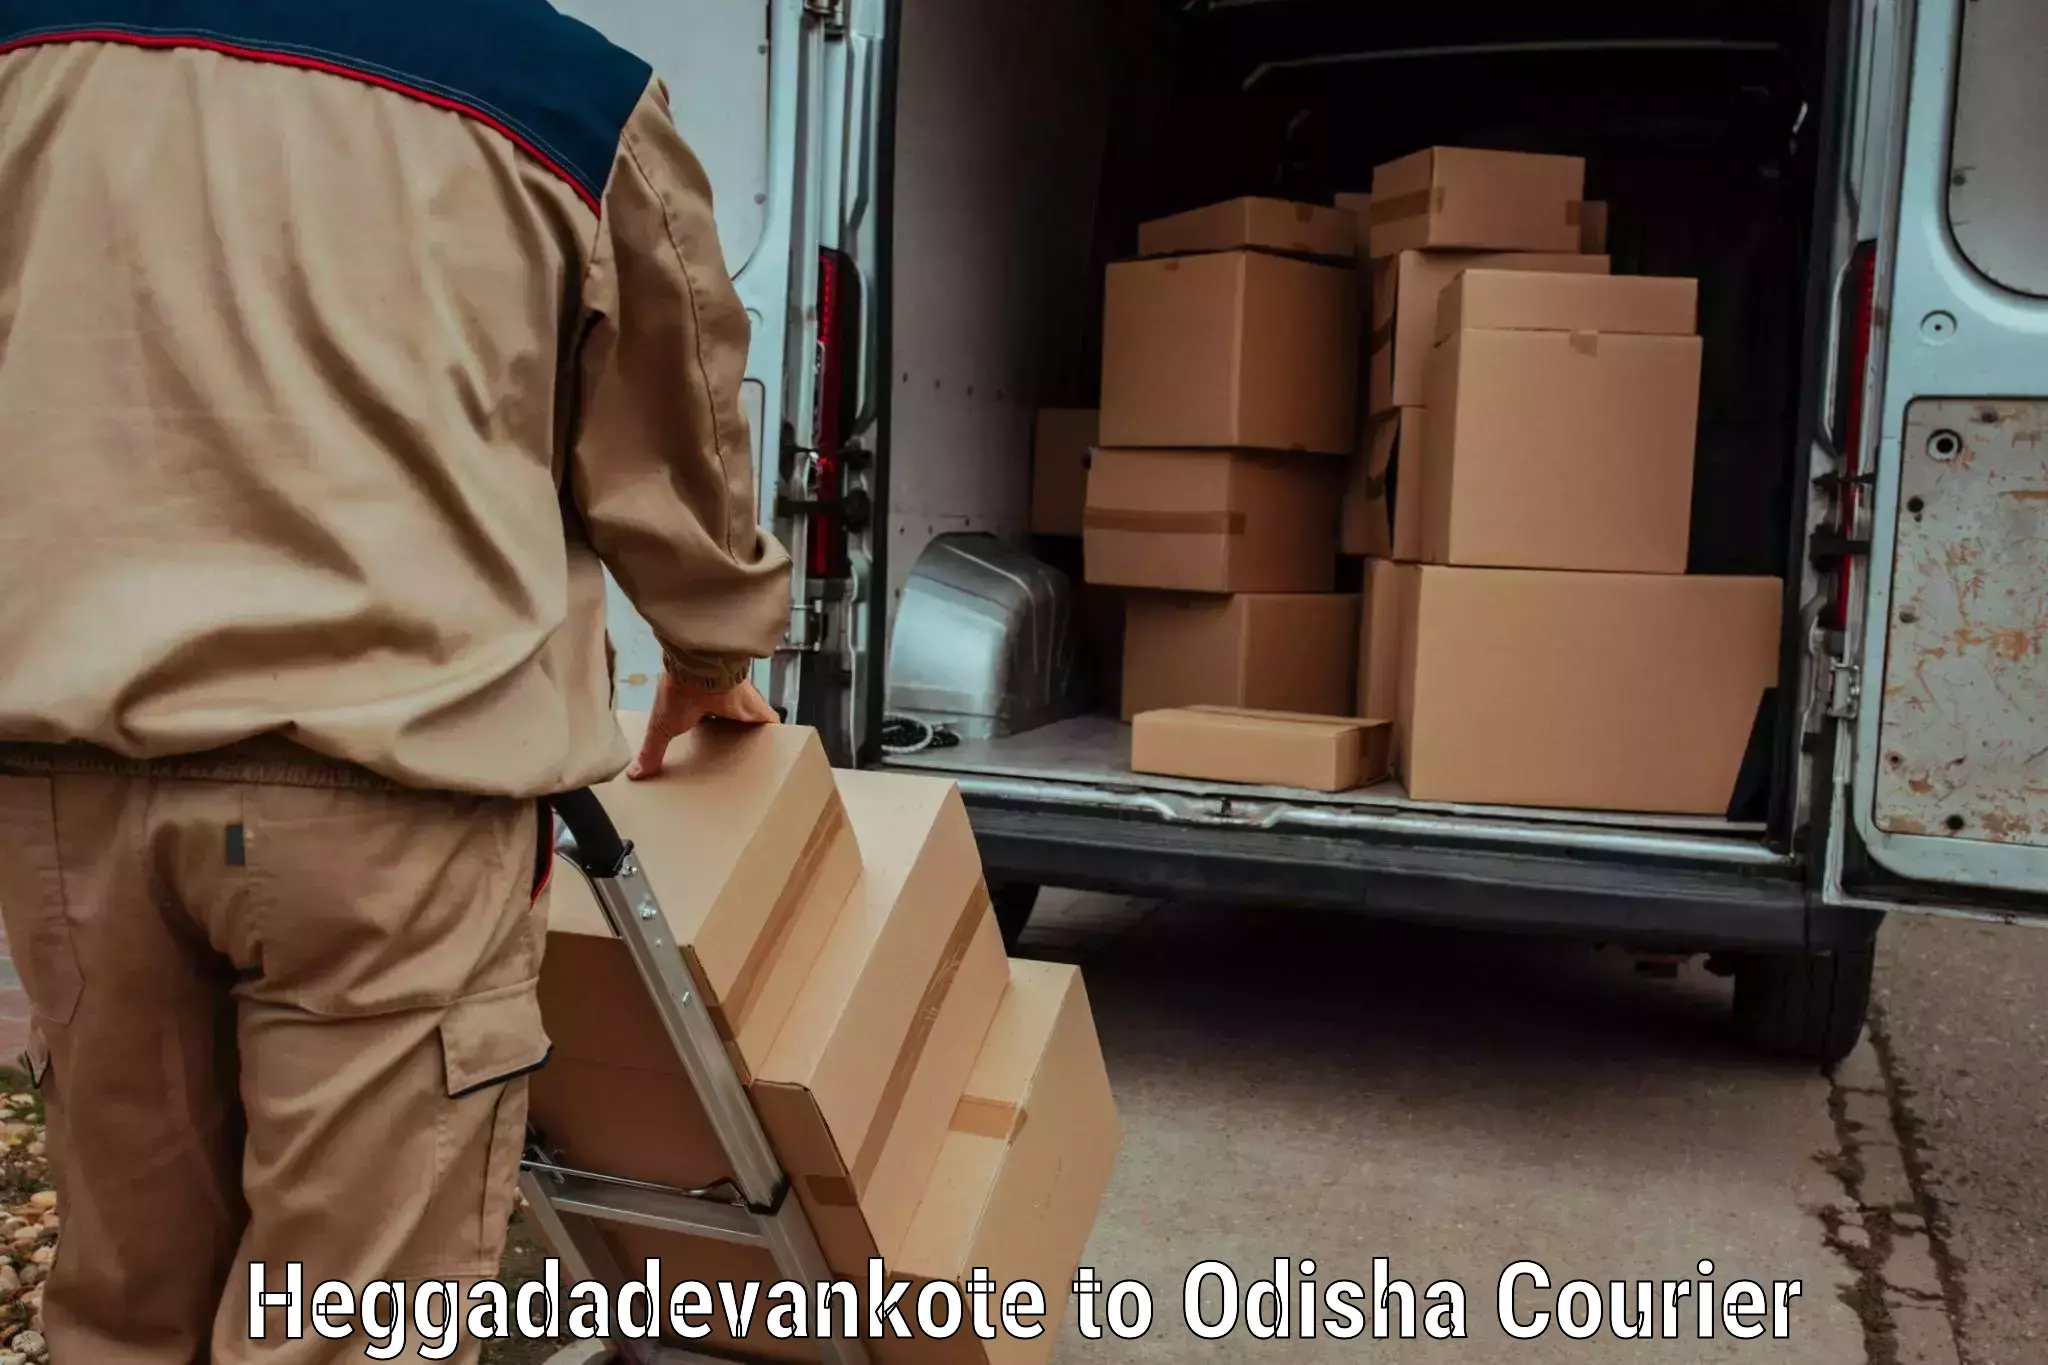 24-hour courier service Heggadadevankote to Talcher